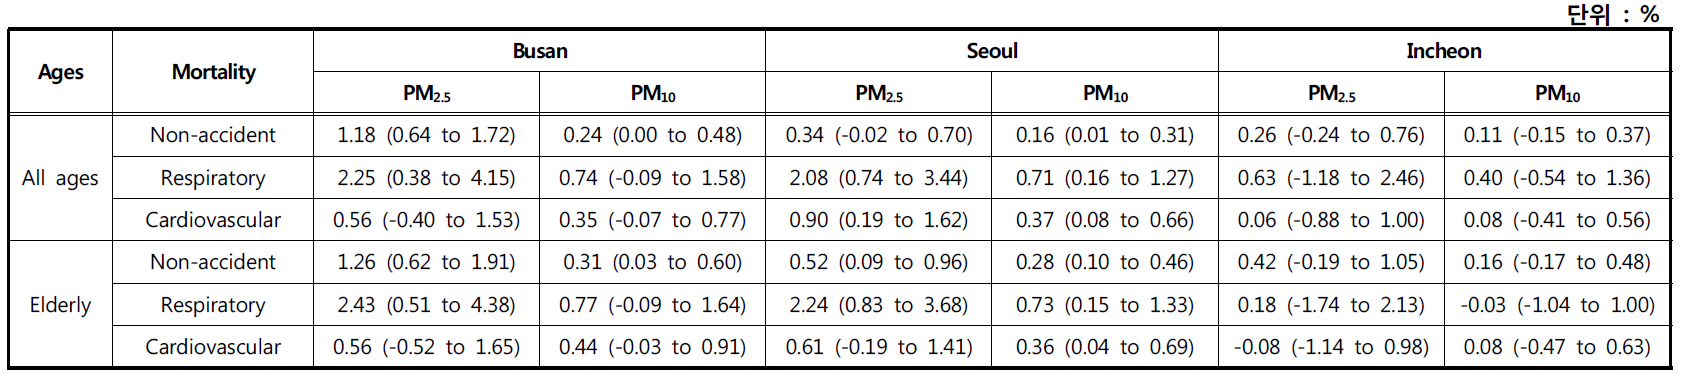 3개 도시(부산, 서울, 인천) PM2.5, PM10 농도(lag01) 10 ㎍/m3 증가에 따른 초과사망발생위험률(%, 95% 신뢰구간) 비교